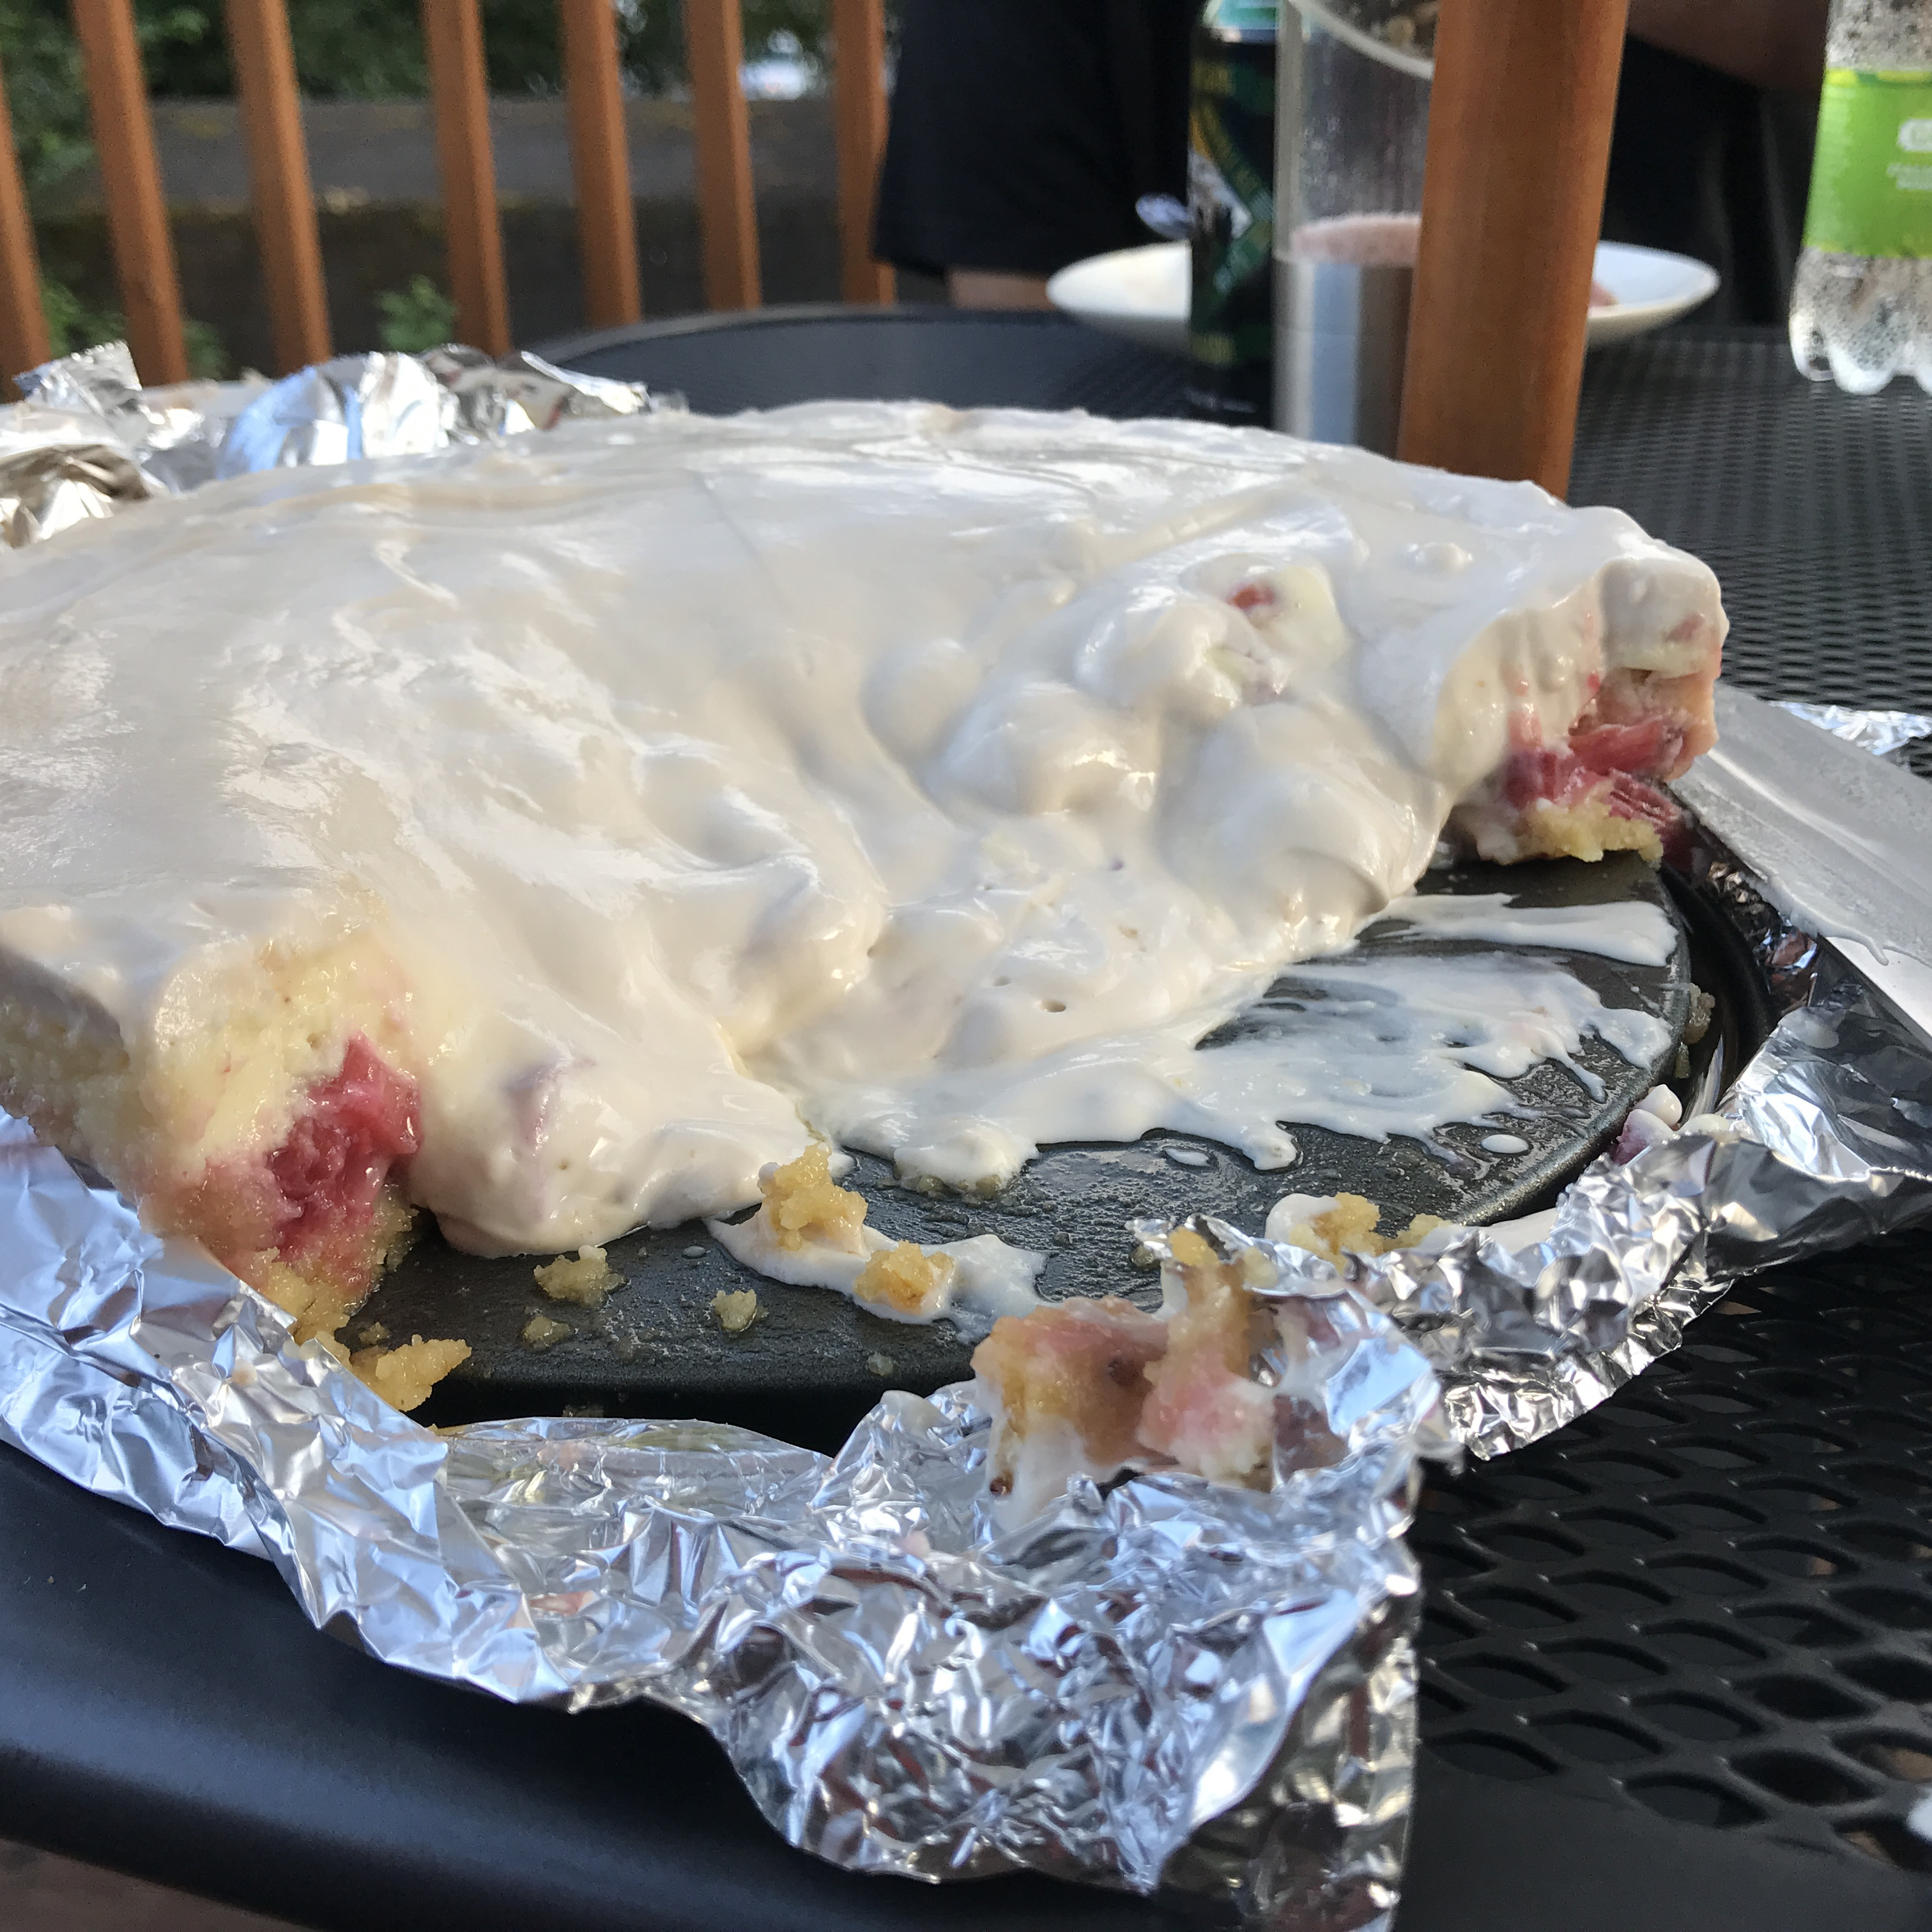 Rhubarb Cheesecake 